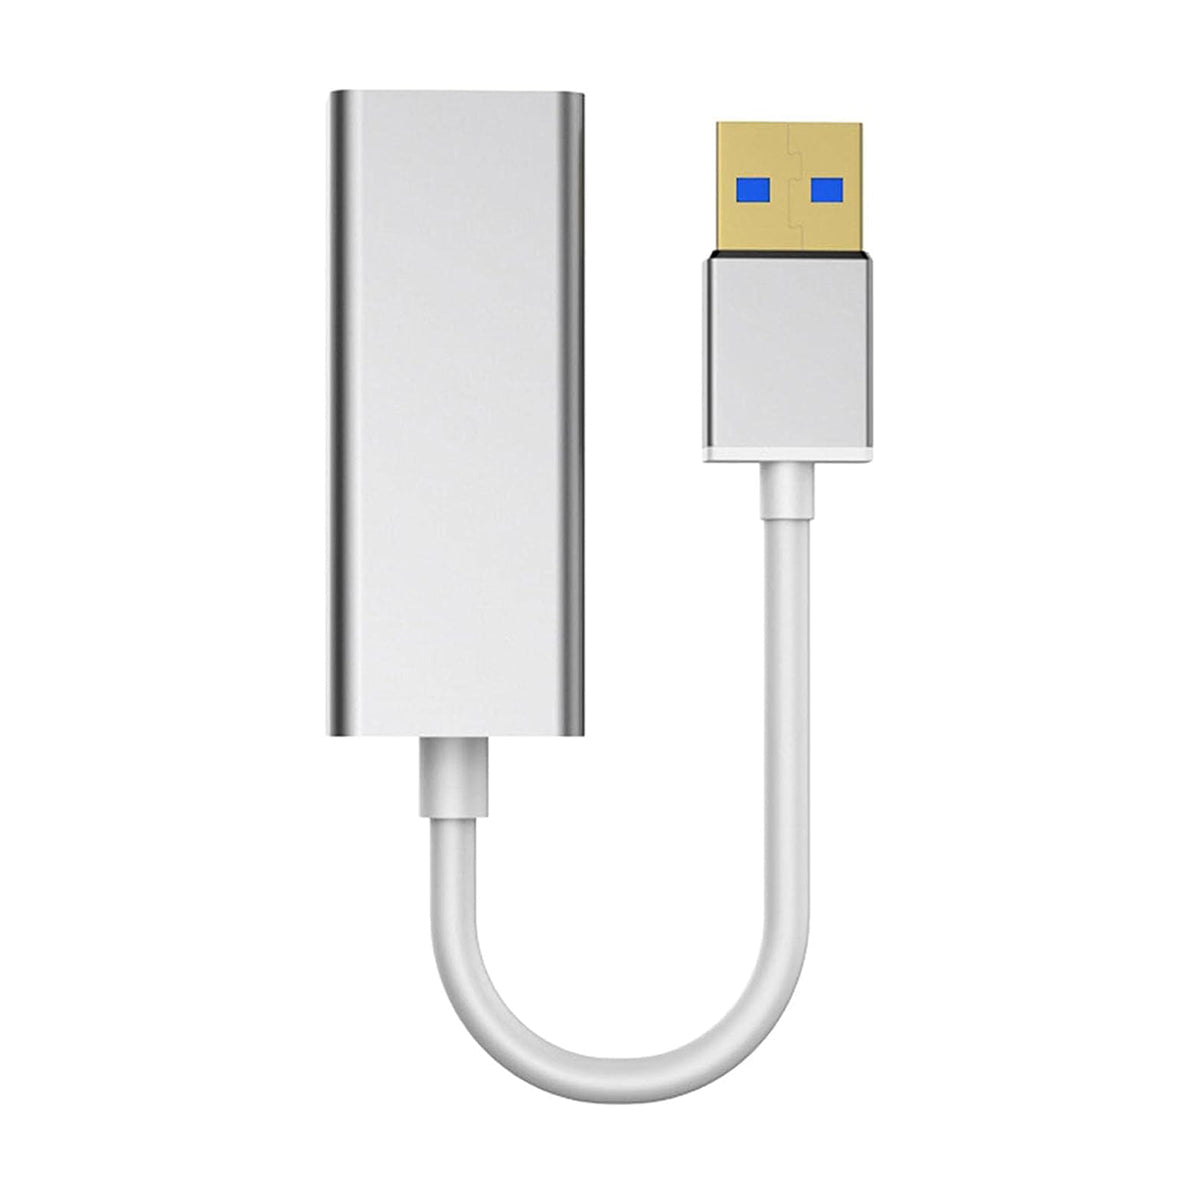 Ethernet-adapter compatibel met laptops, USB Ethernet-adapter USB naar RJ45, Ethernet-adapterconverter